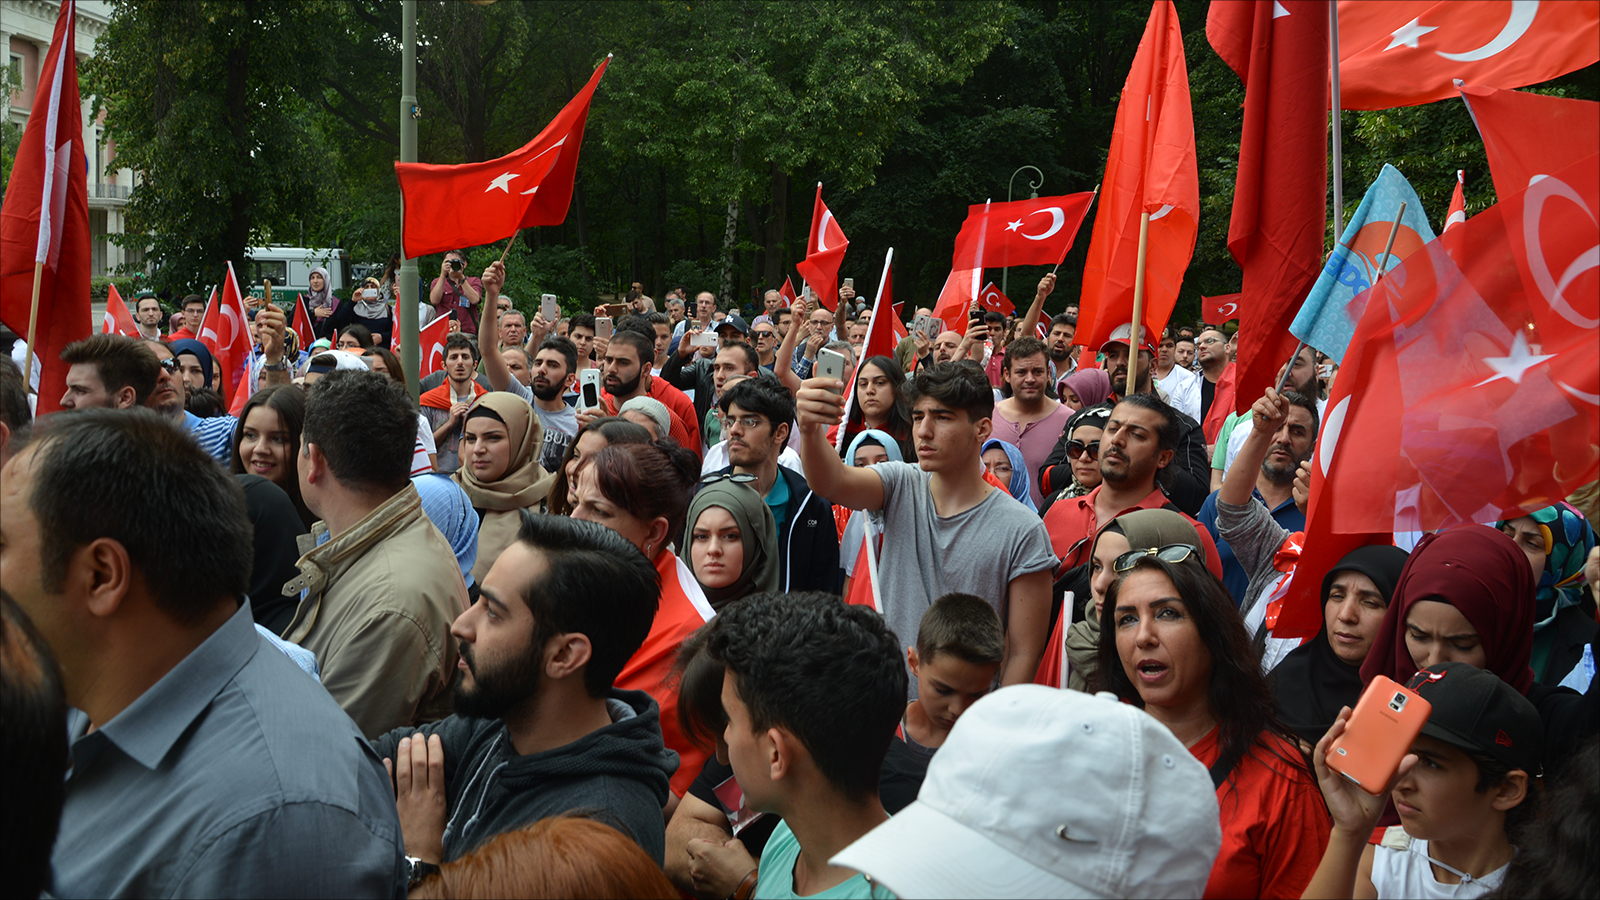 ‪أتراك ألمانيا يؤيدون موقف الرئيس أردوغان‬ أتراك ألمانيا يؤيدون موقف الرئيس أردوغان (الجزيرة)